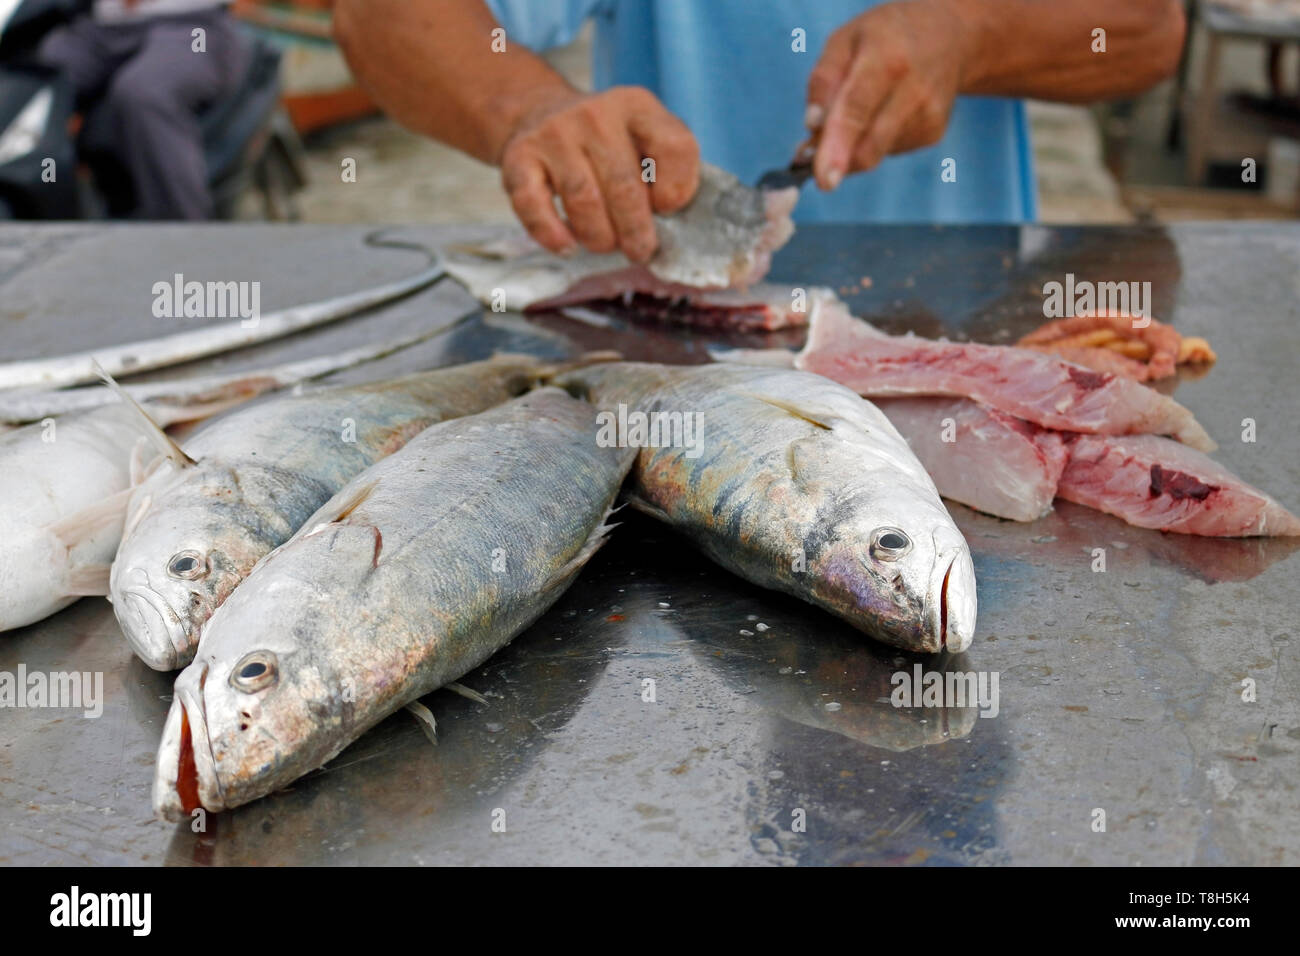 Der Fischer reinigt frischen Fisch, die er gerade im Meer gefangen hat. Ihre Kunden warten. Er nutzt geschickt ein scharfes Messer. Stockfoto